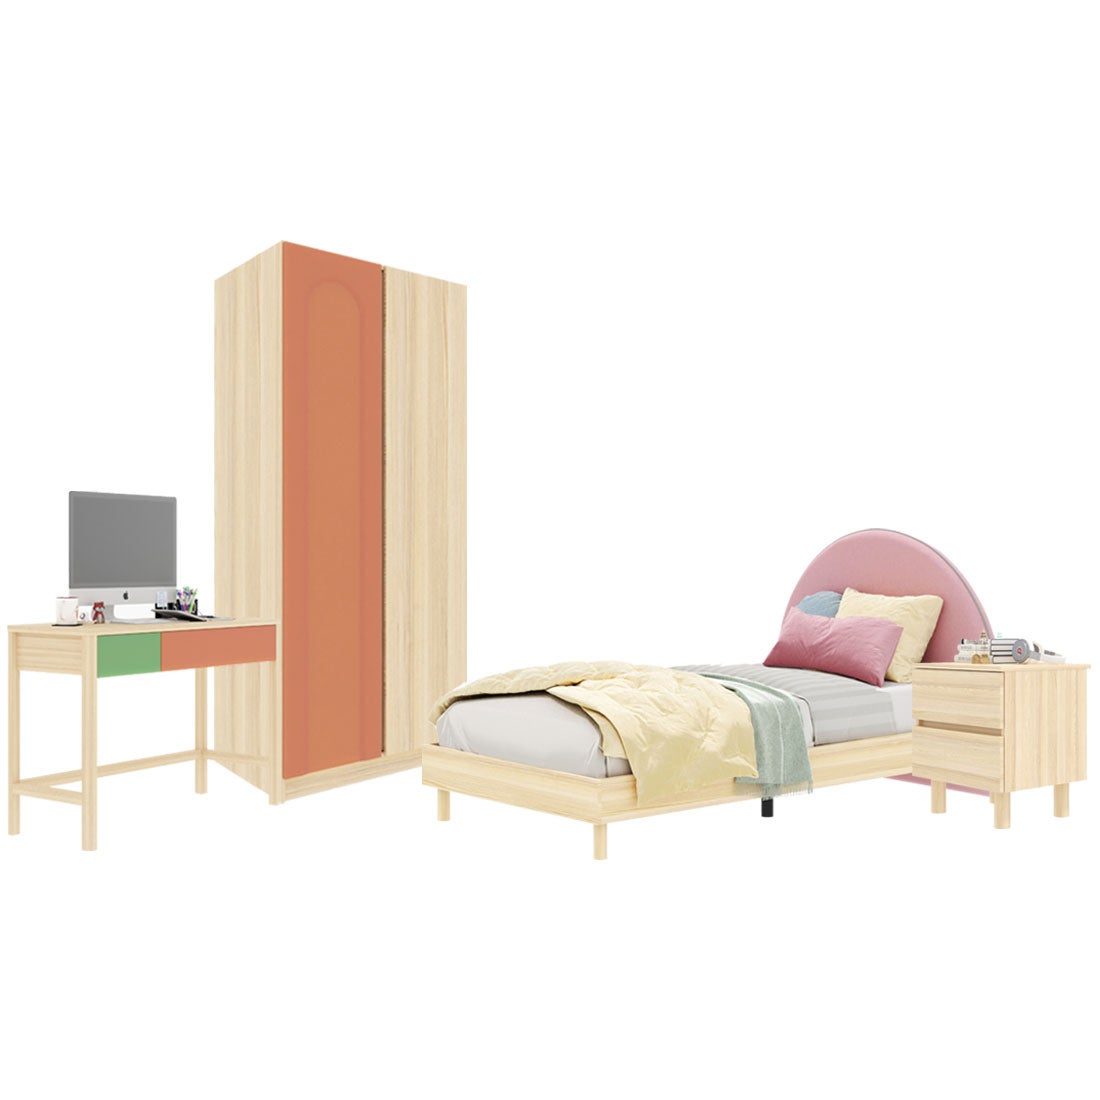 ชุดห้องนอน ขนาด 3.5 ฟุต-เบาะชมพู รุ่น Bingsoo & ตู้เสื้อผ้า 90 ซม. พร้อมตู้ข้างเตียง สีพีช01